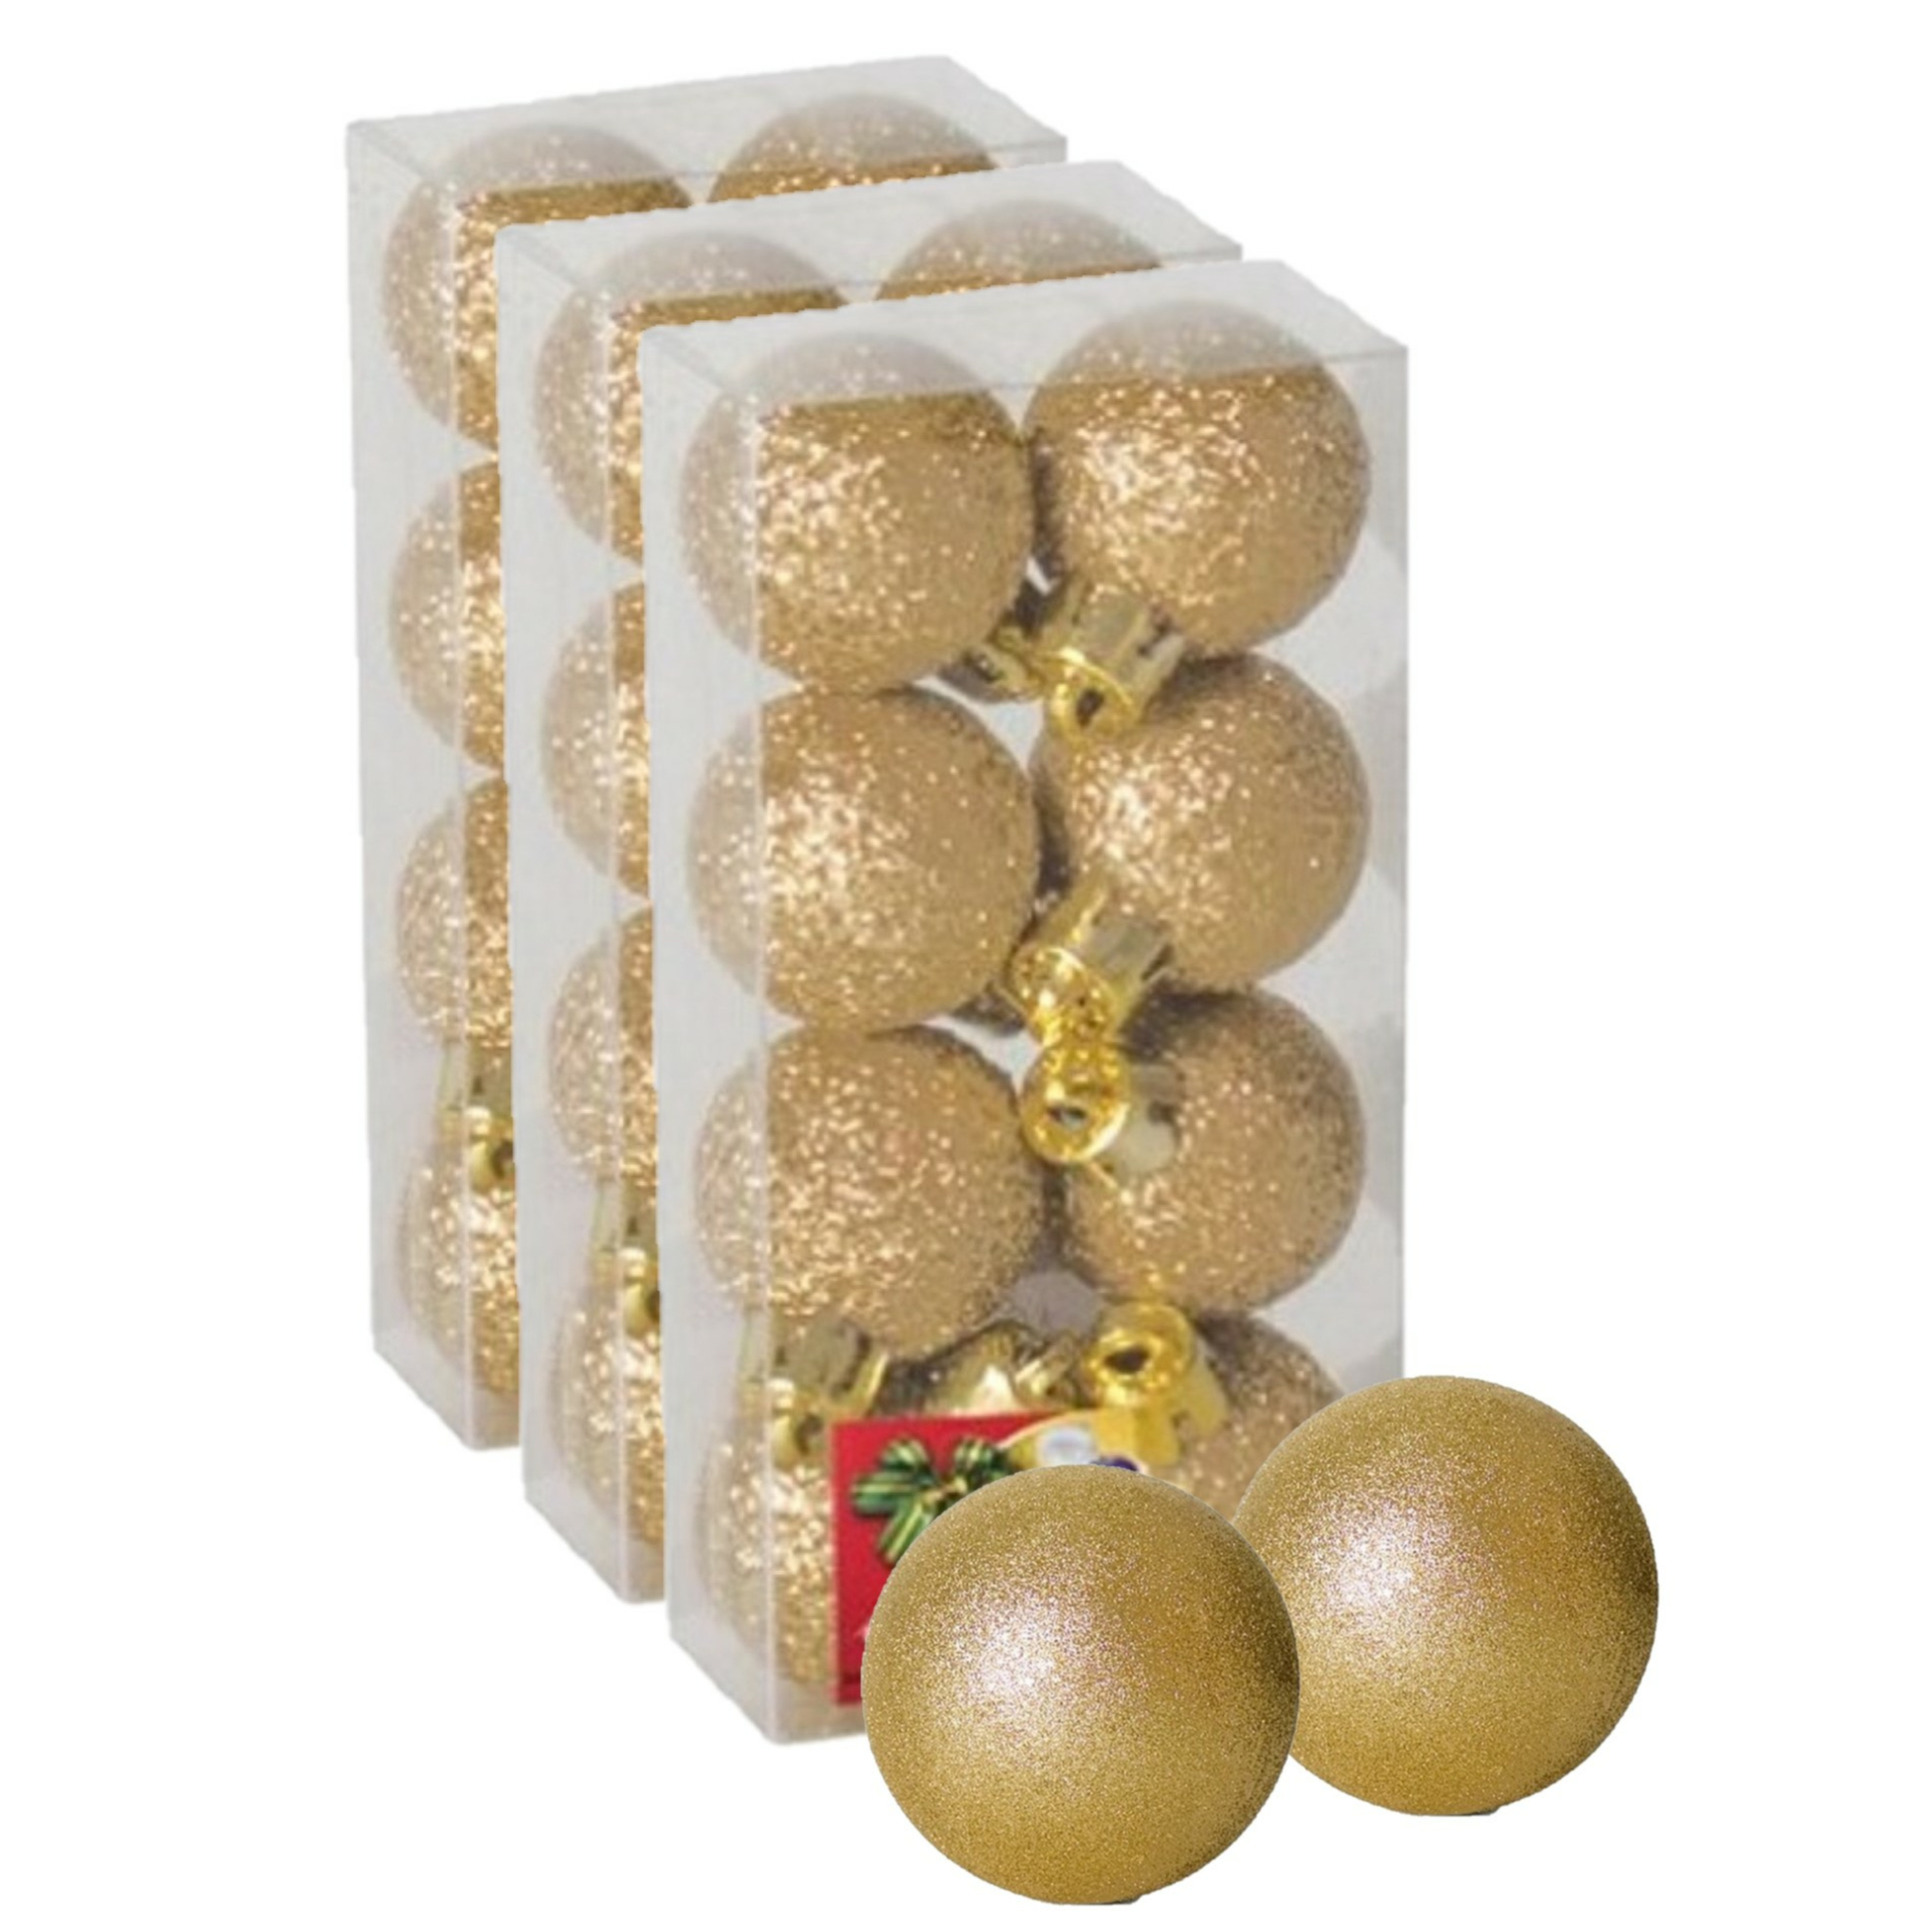 24x stuks kerstballen goud glitters kunststof 3 cm